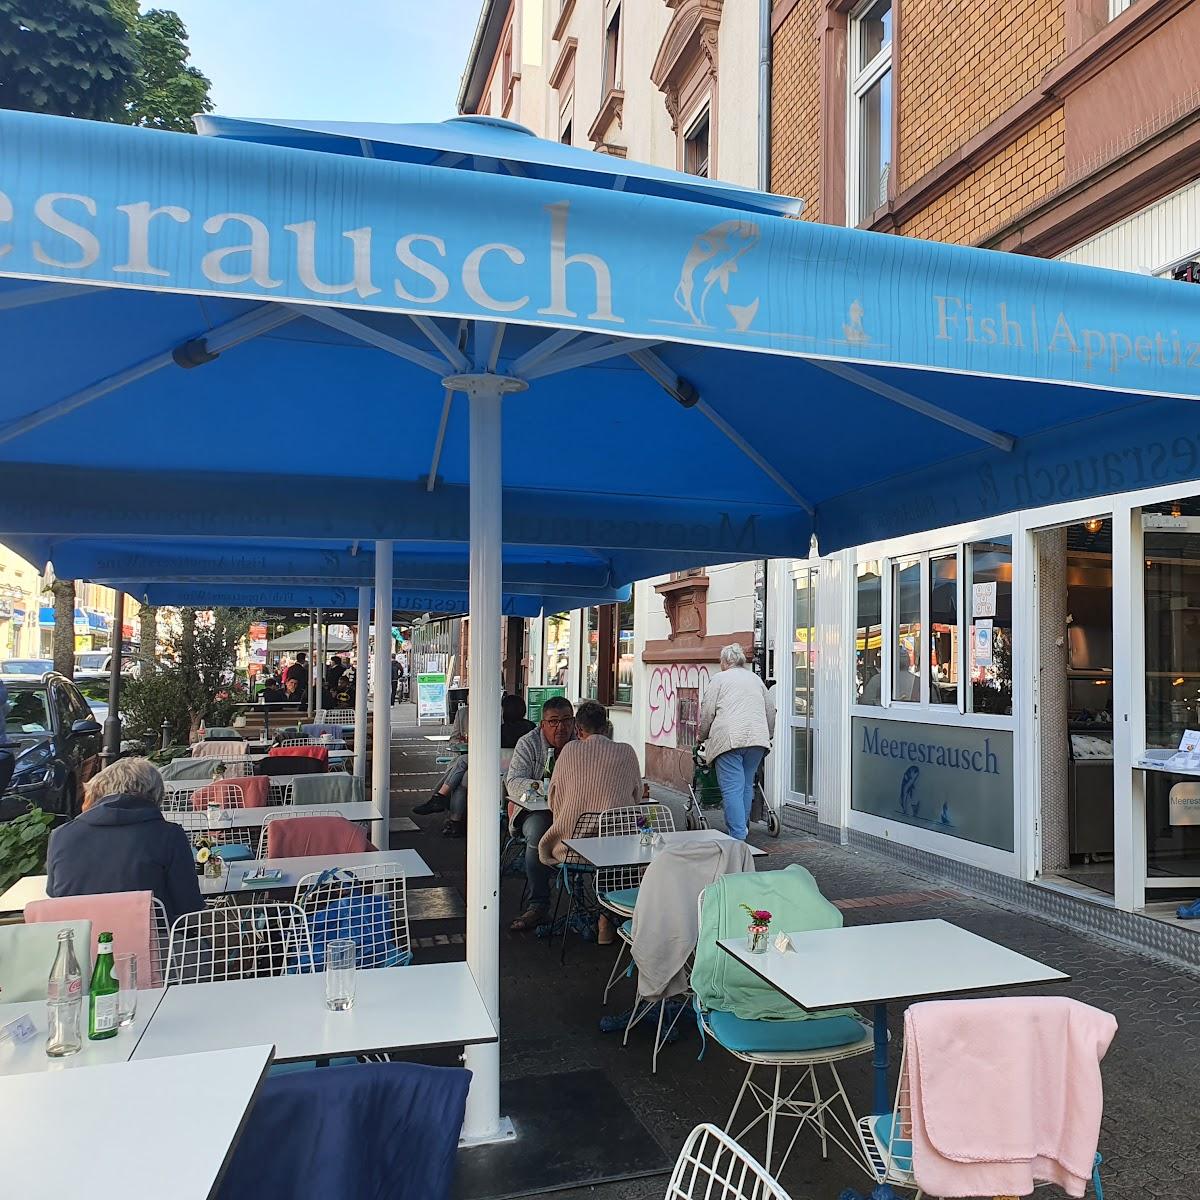 Restaurant "Meeresrausch" in Frankfurt am Main